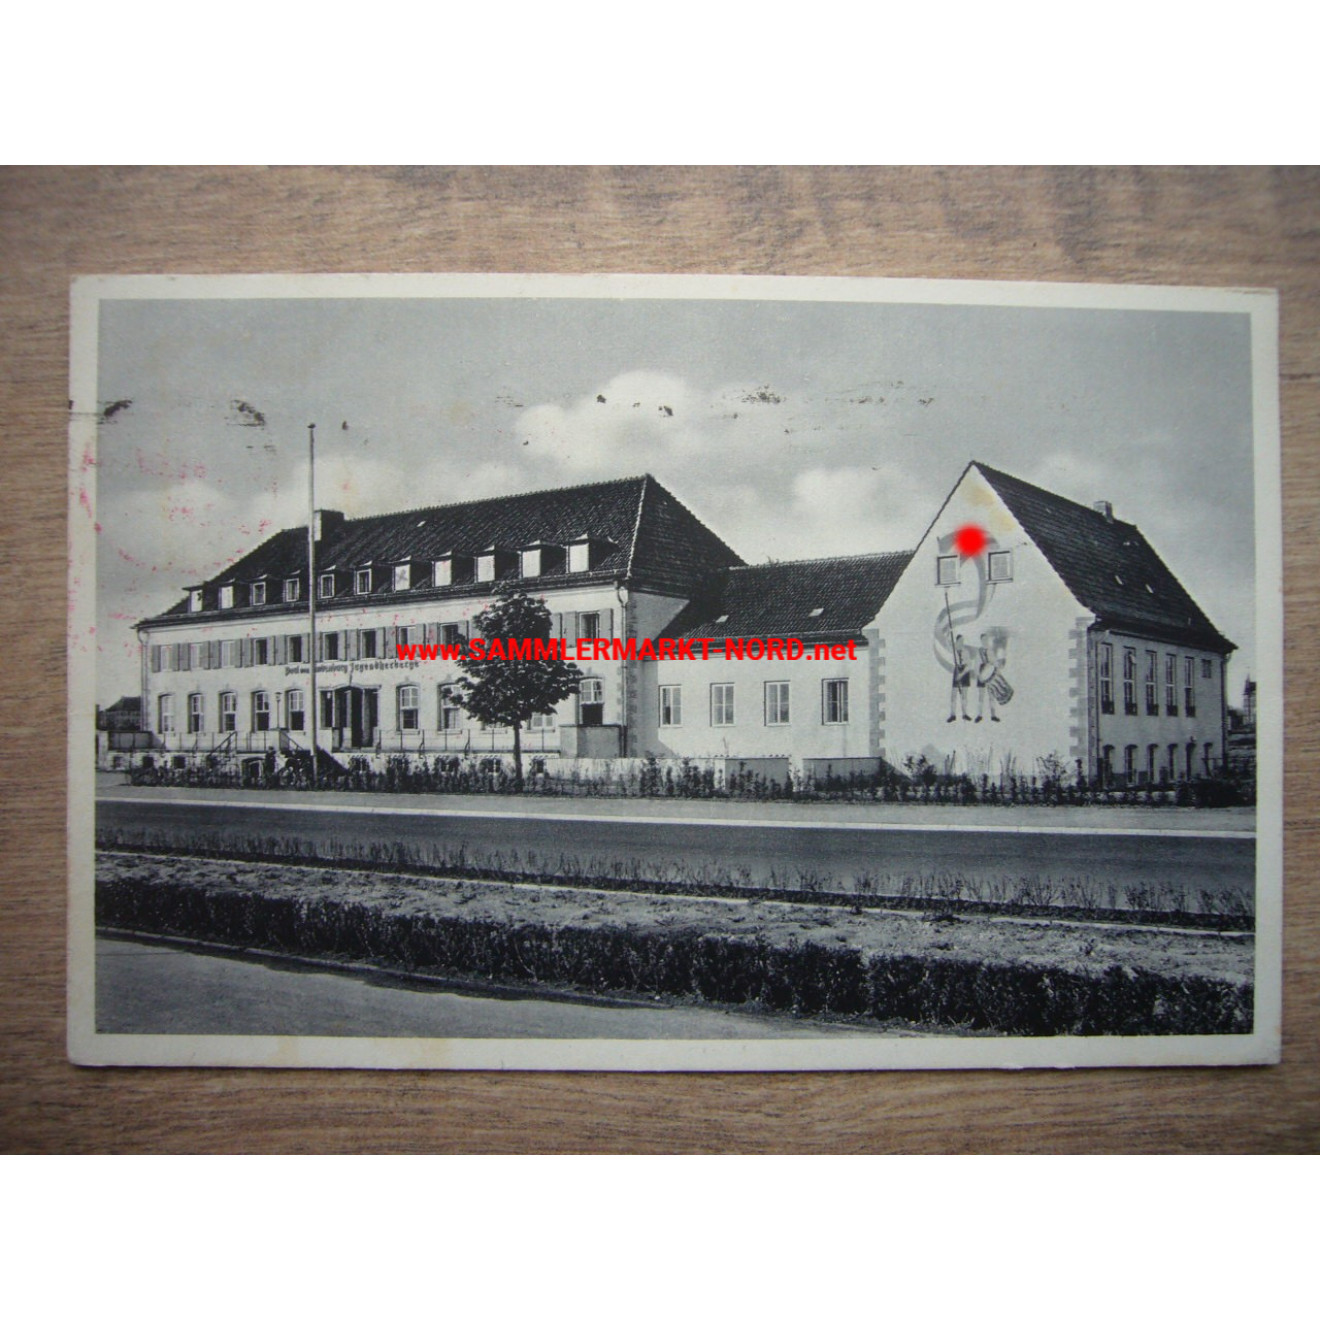 DJH youth hostel (HJ) - Paul von Hindenburg - Hanover at the Maschsee